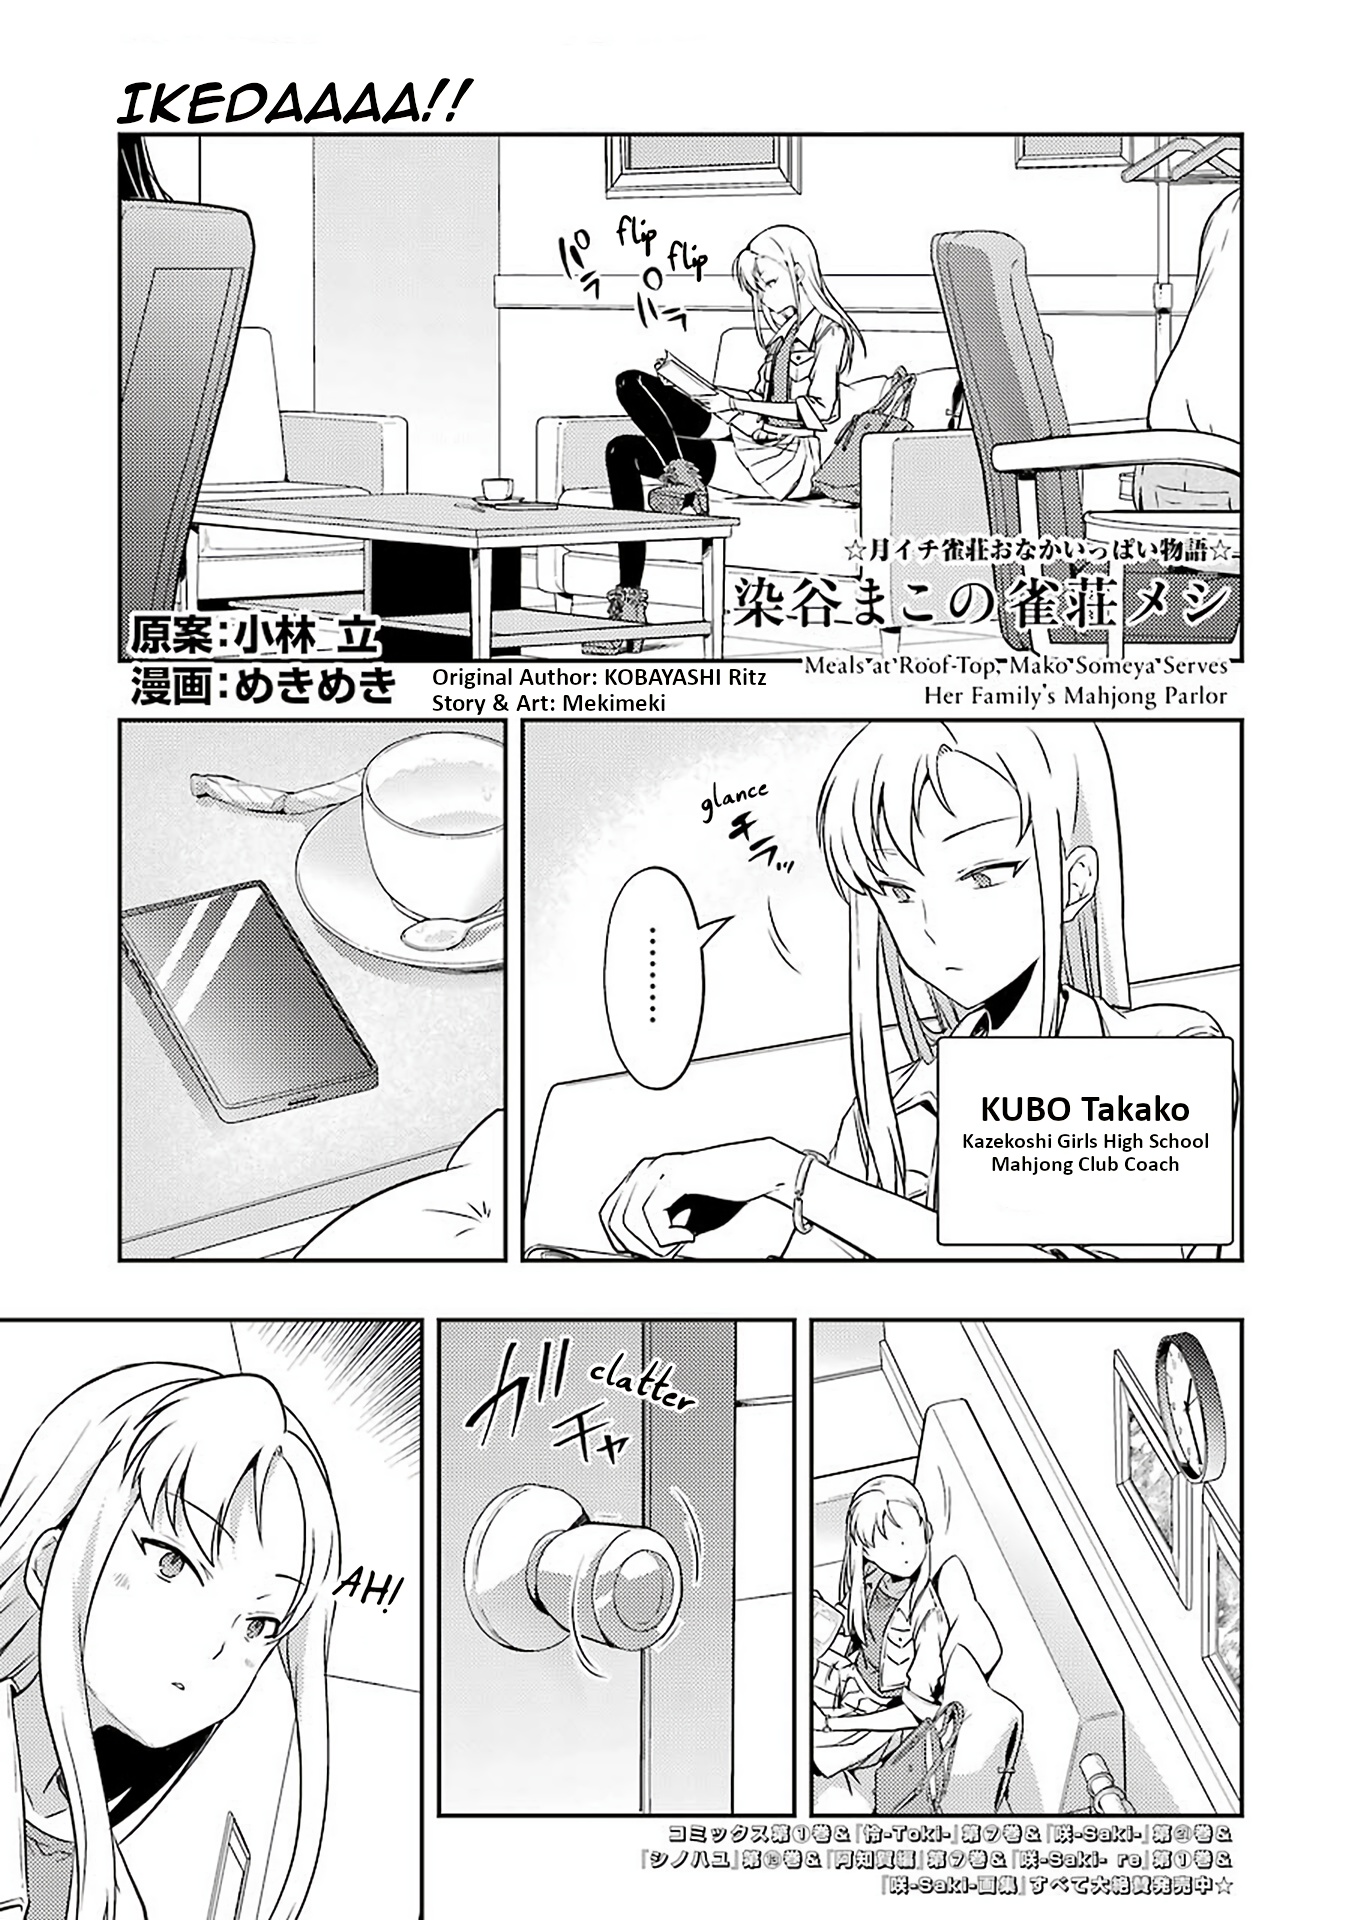 Someya Mako's Mahjong Parlor Food - Page 1